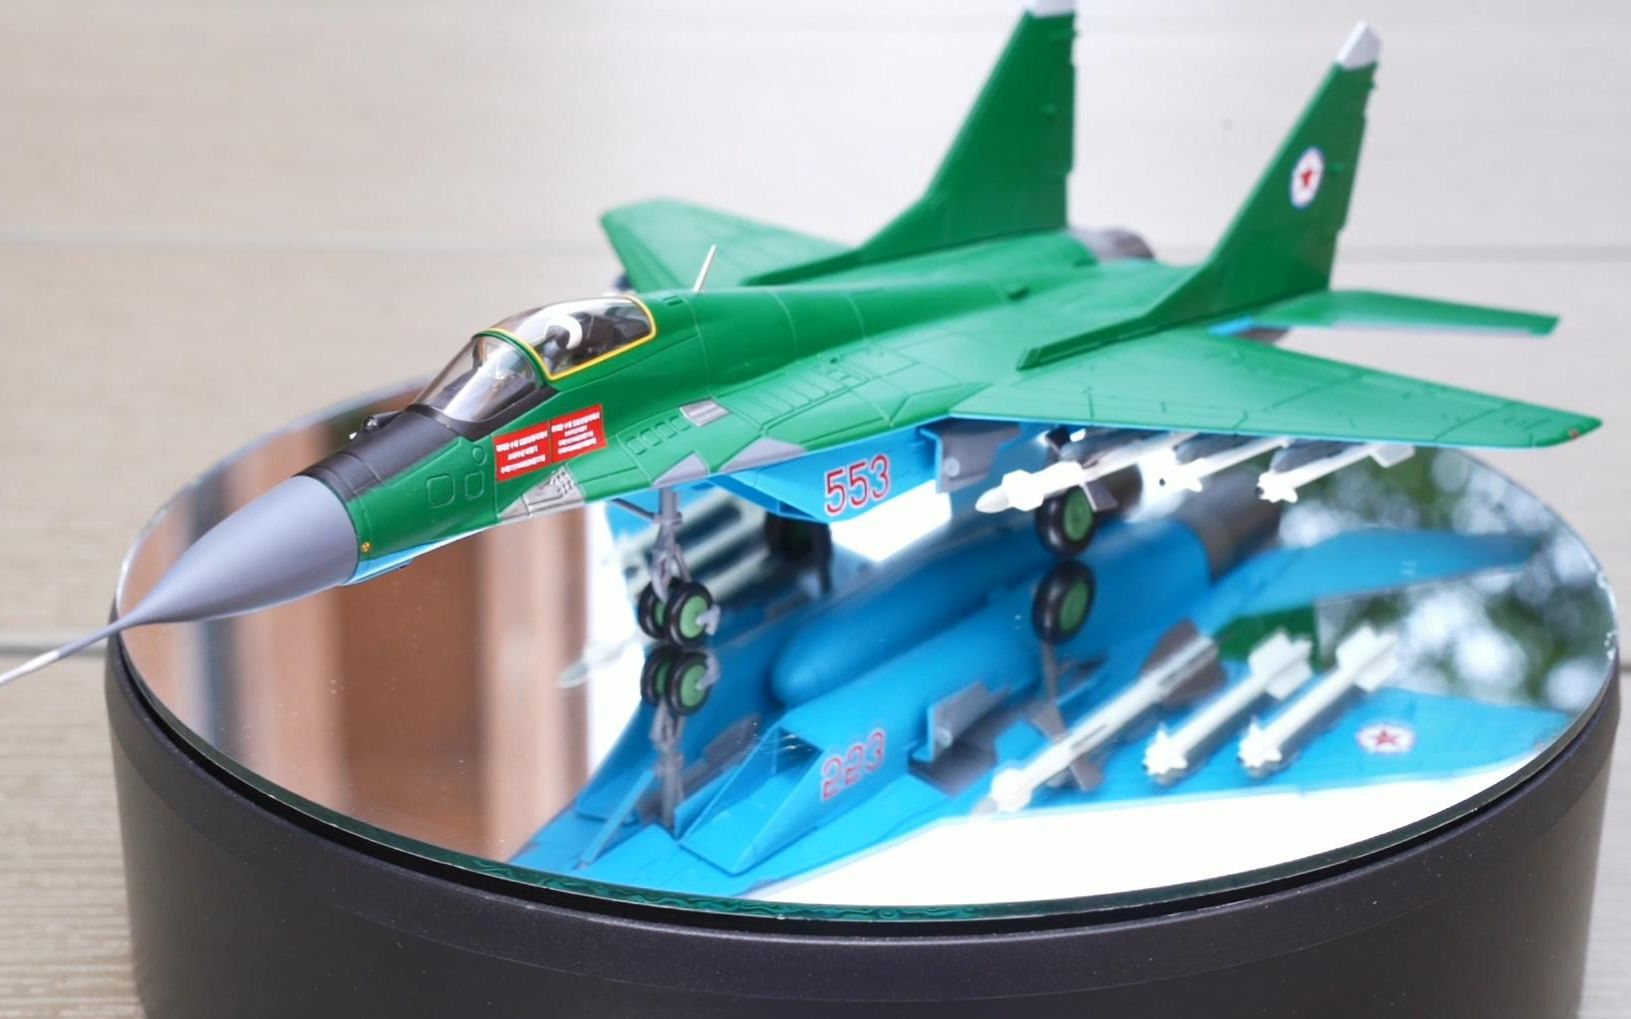 神秘的朝鲜人民军“支点”米格-29战斗机合金成品模型开盒鉴赏